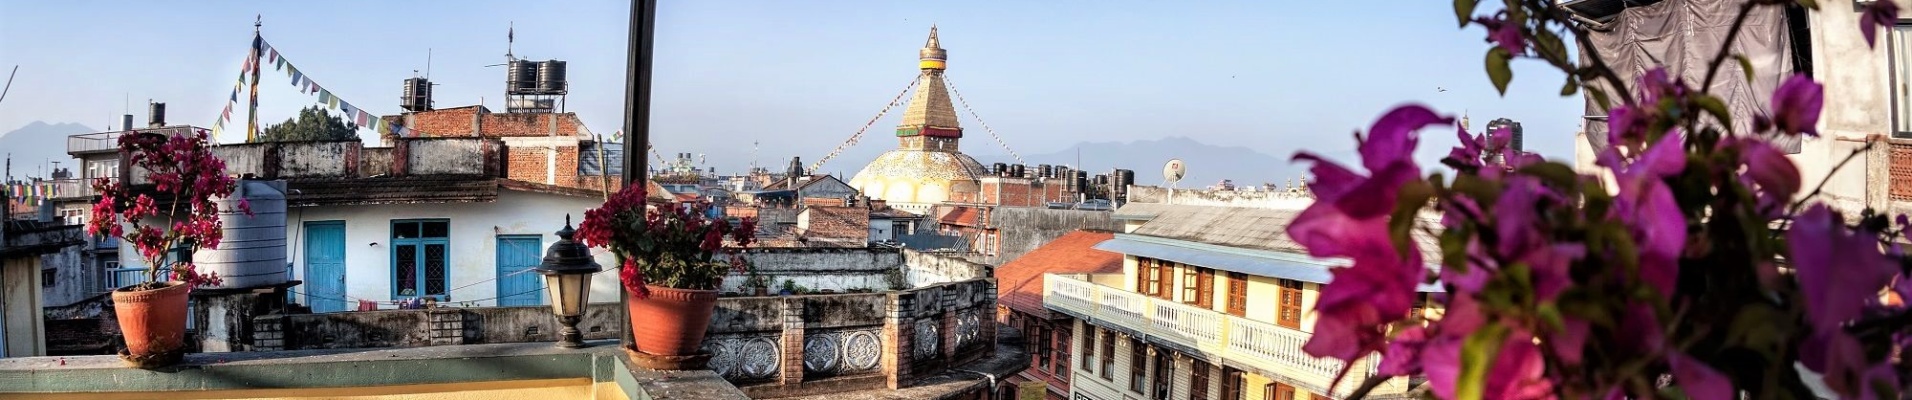 Vue sur Katmandou depuis ses toits, Népal